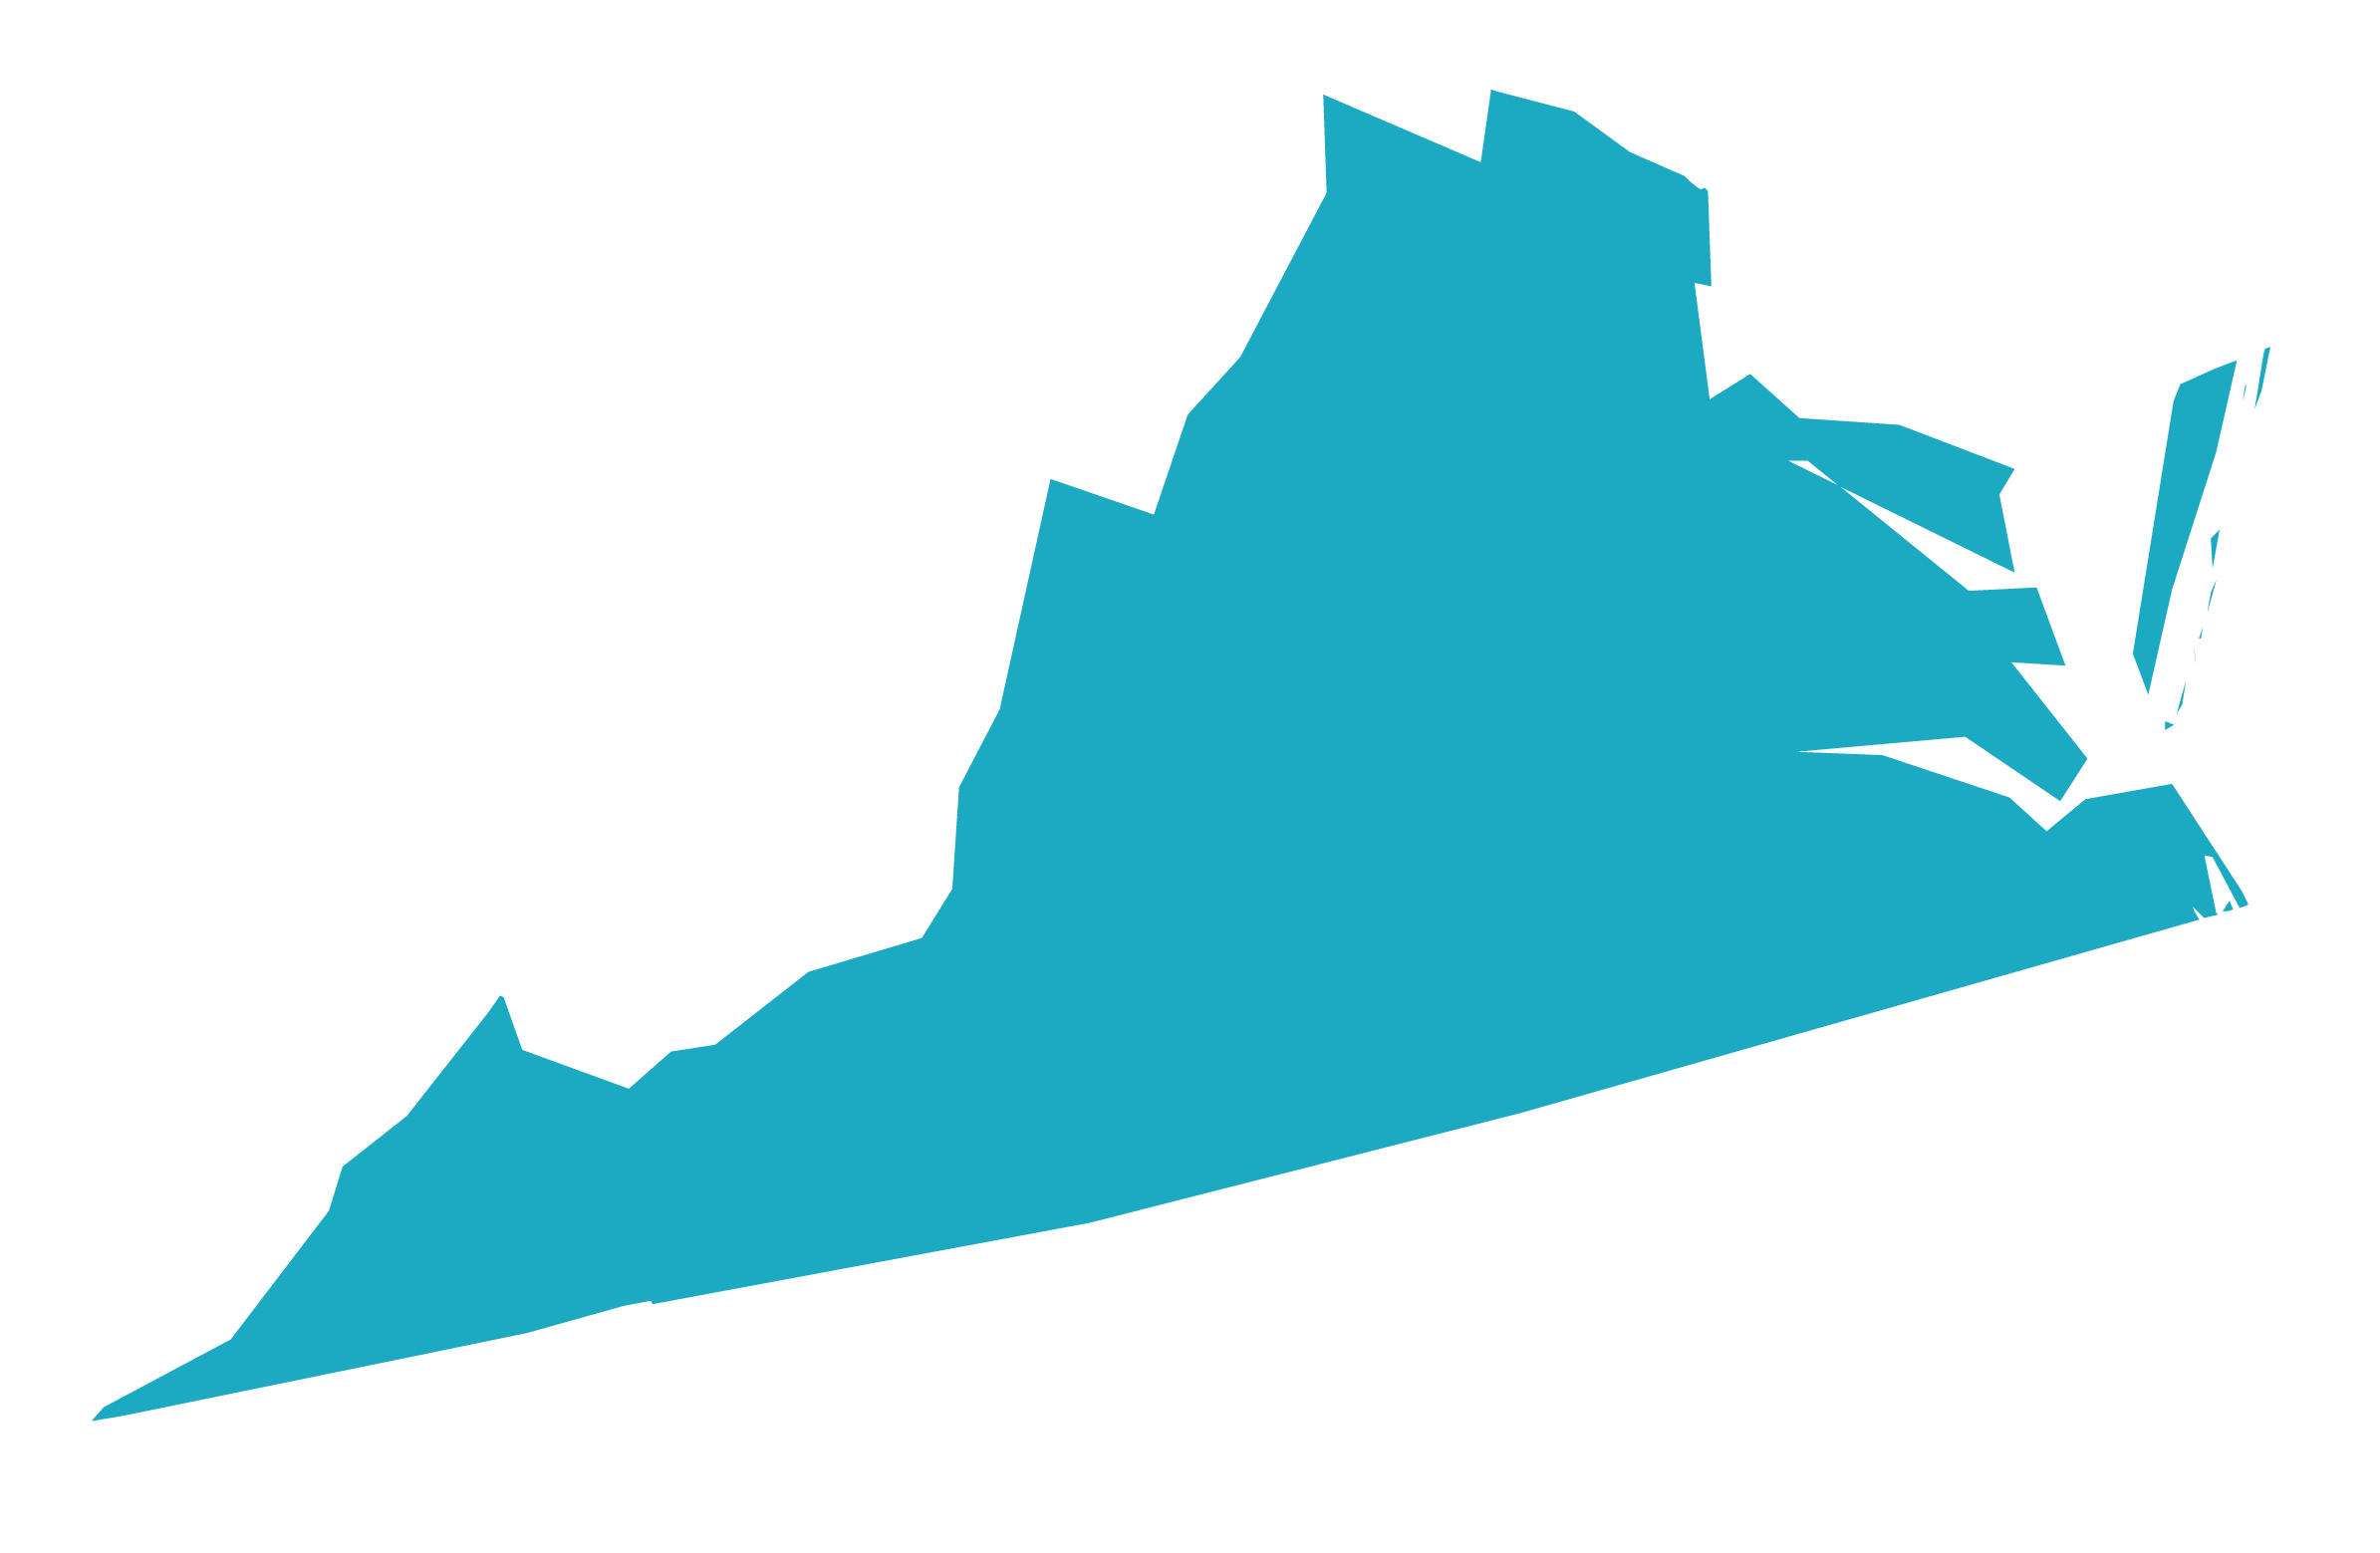 Virginia State Logo